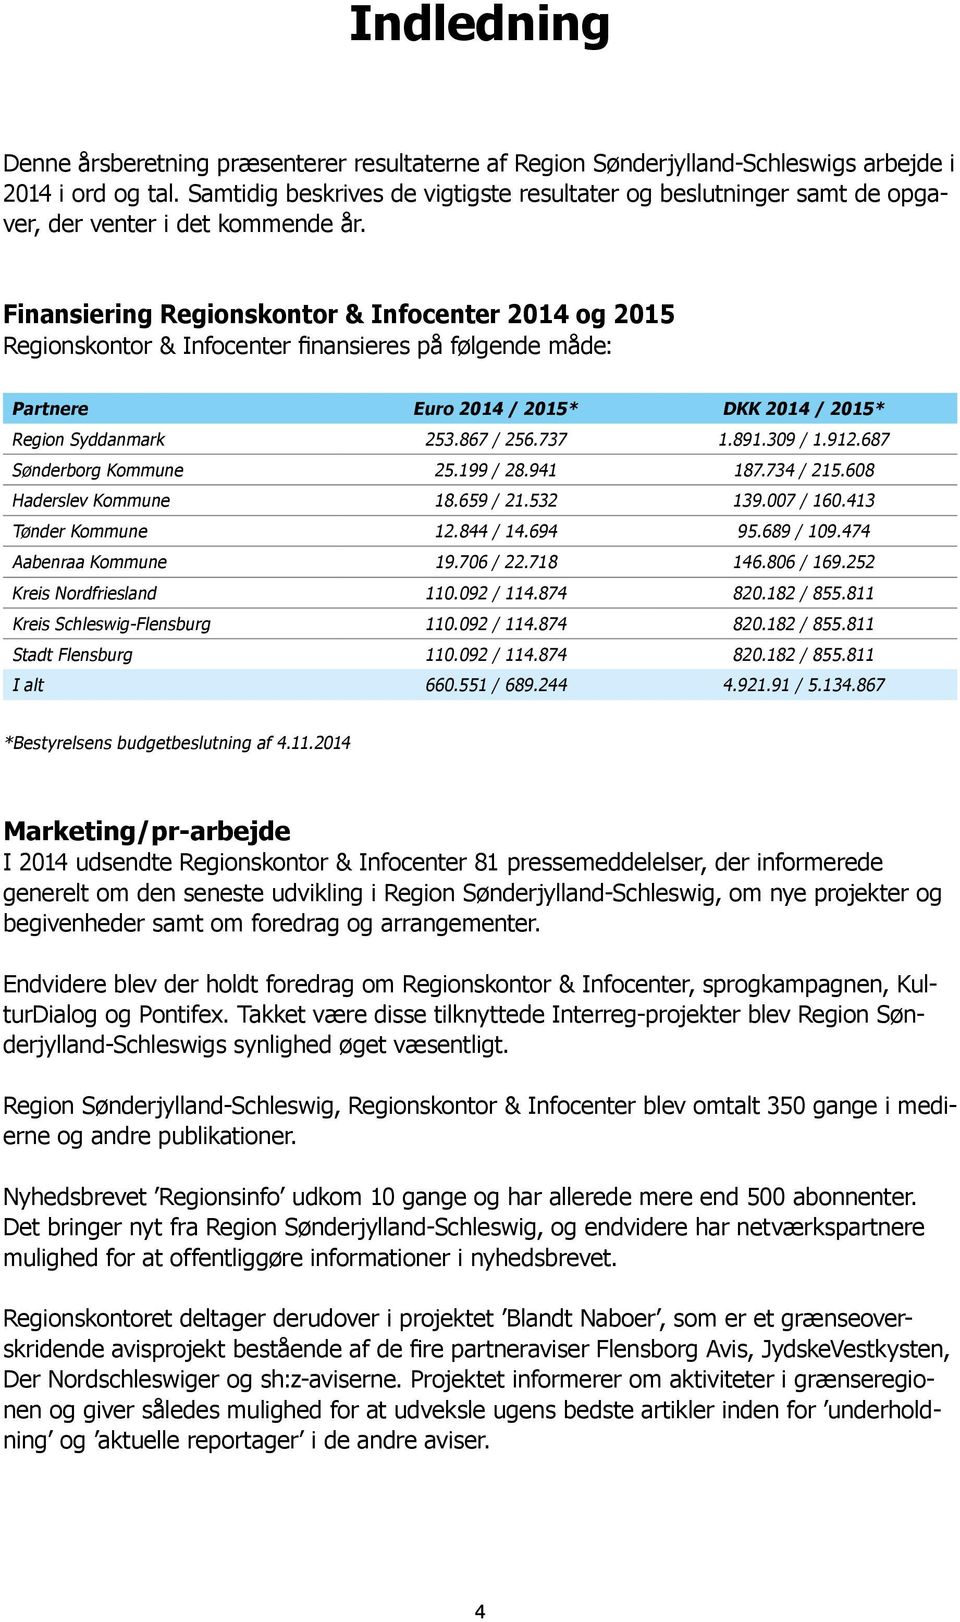 Finansiering Regionskontor & Infocenter 2014 og 2015 Regionskontor & Infocenter finansieres på følgende måde: Partnere Euro 2014 / 2015* DKK 2014 / 2015* Region Syddanmark 253.867 / 256.737 1.891.